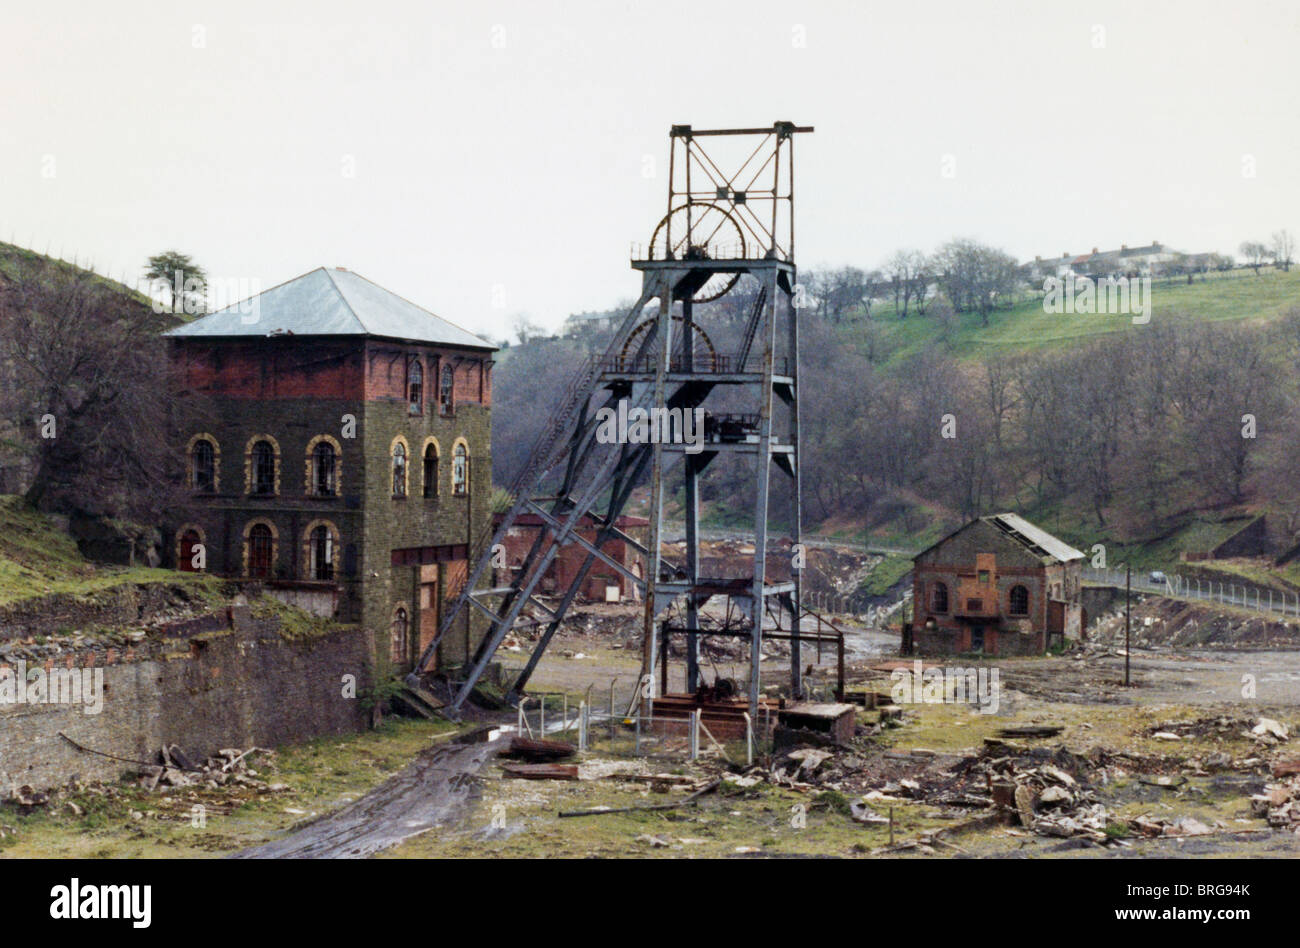 Tirpentwys profonda miniera di carbone abbandonata e di essere demolita nei pressi di Pontypool Lancaster London South Wales Valli Regno Unito circa 1982 Foto Stock